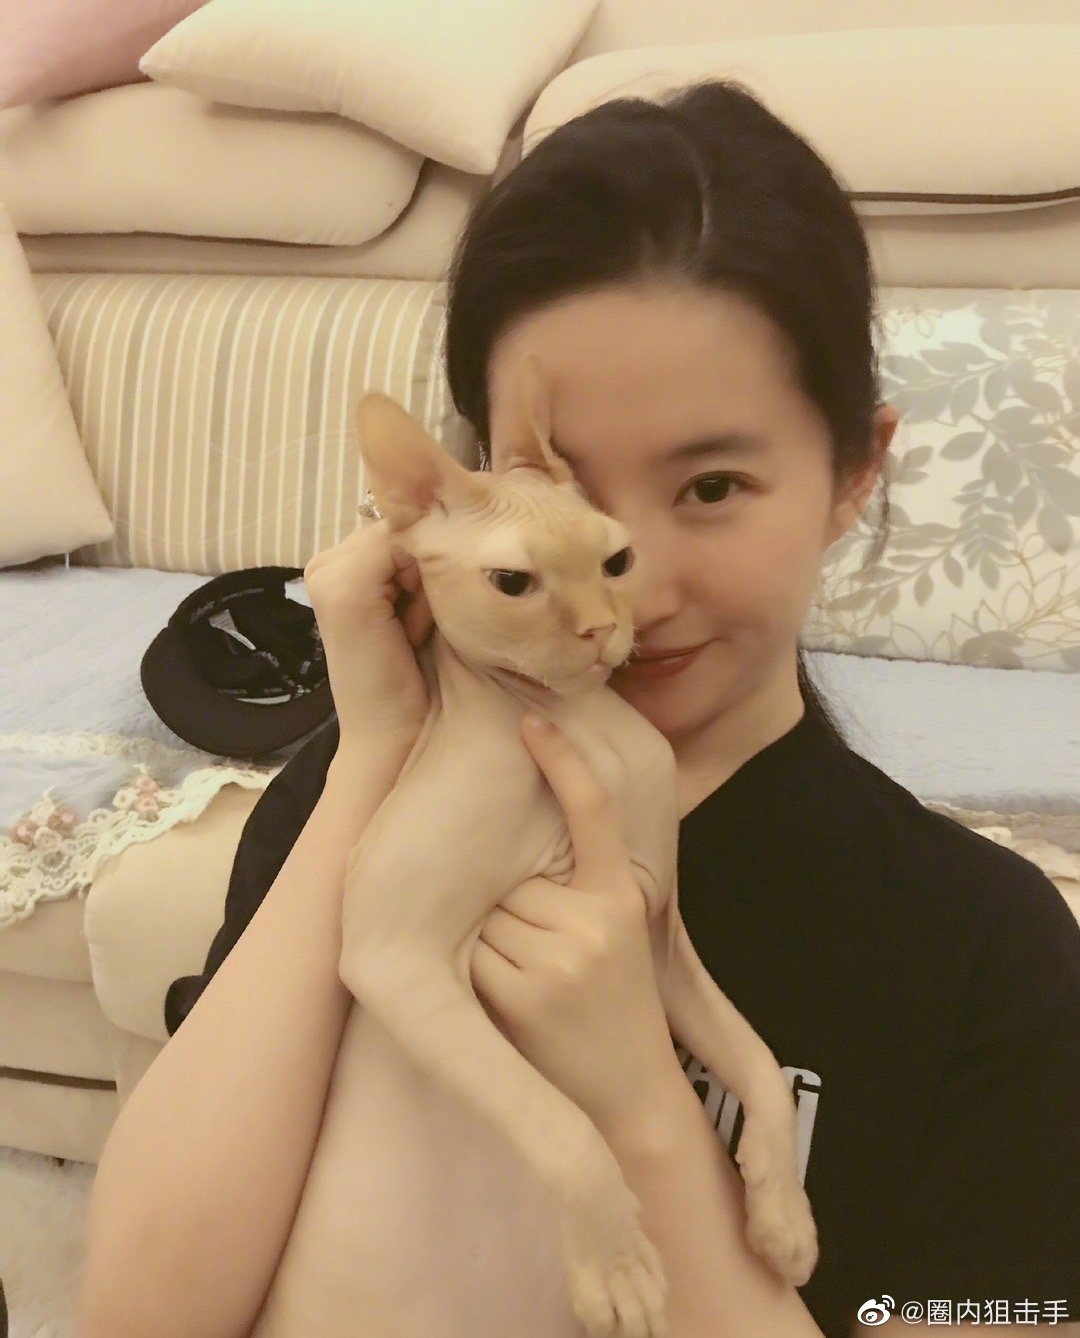 刘亦菲的猫煤球图片